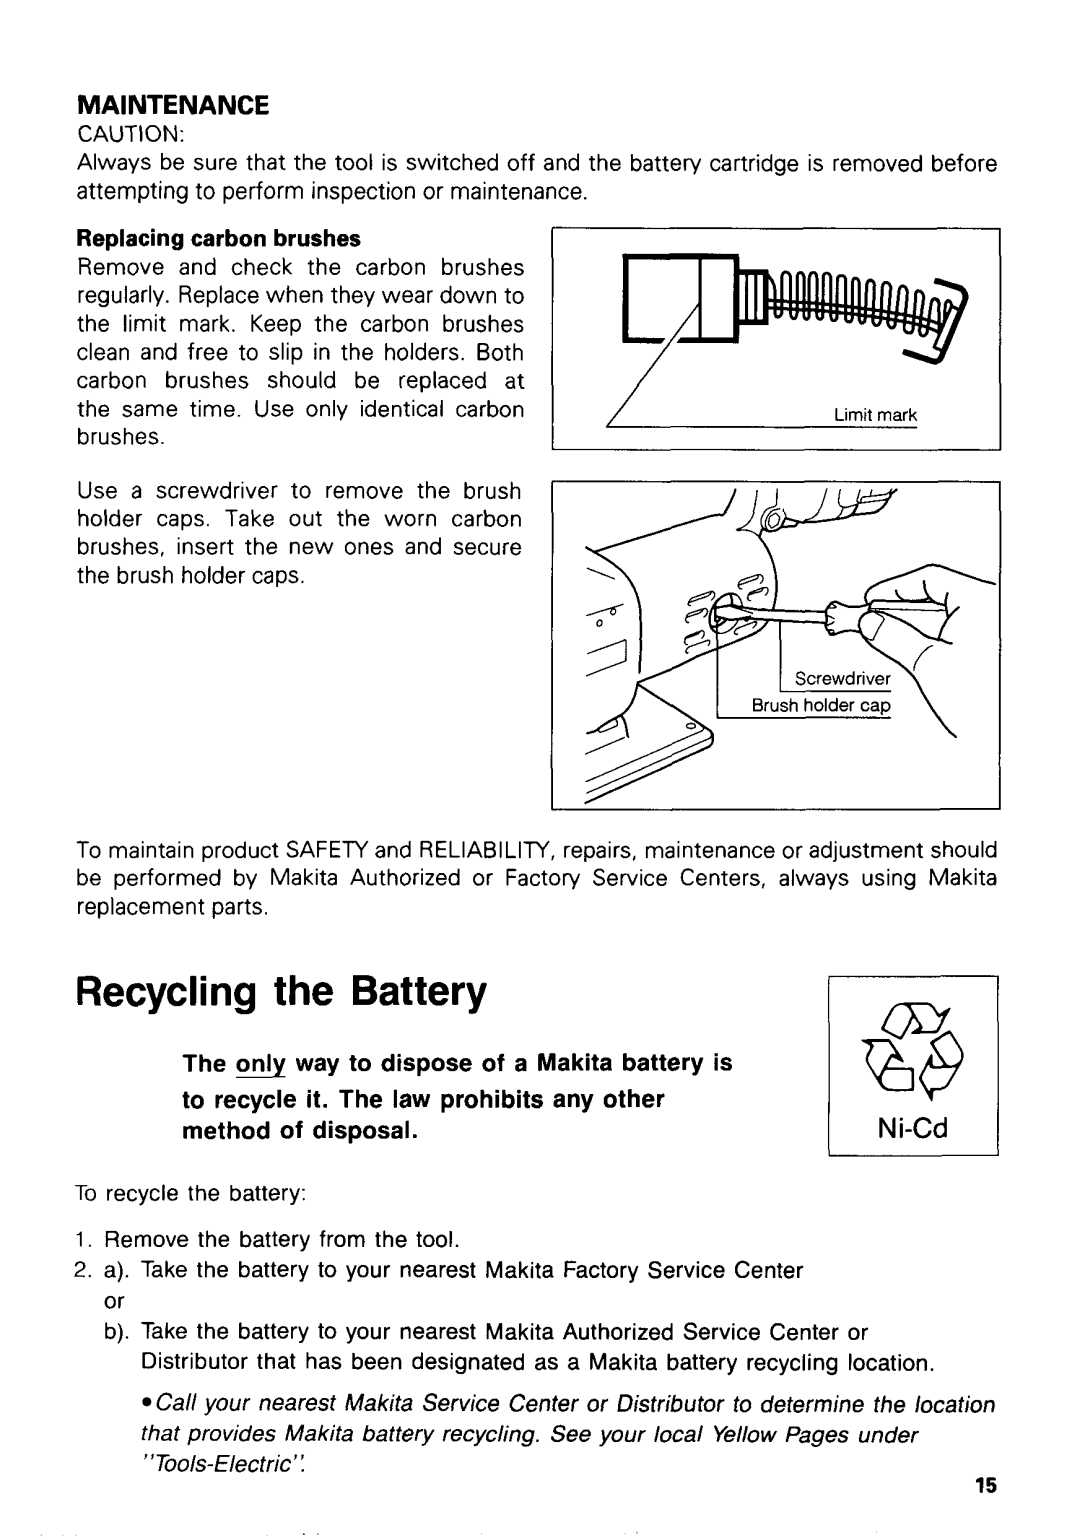 Makita 433ODWA instruction manual Ni-Cd, Maintenance, Recycling the Battery 